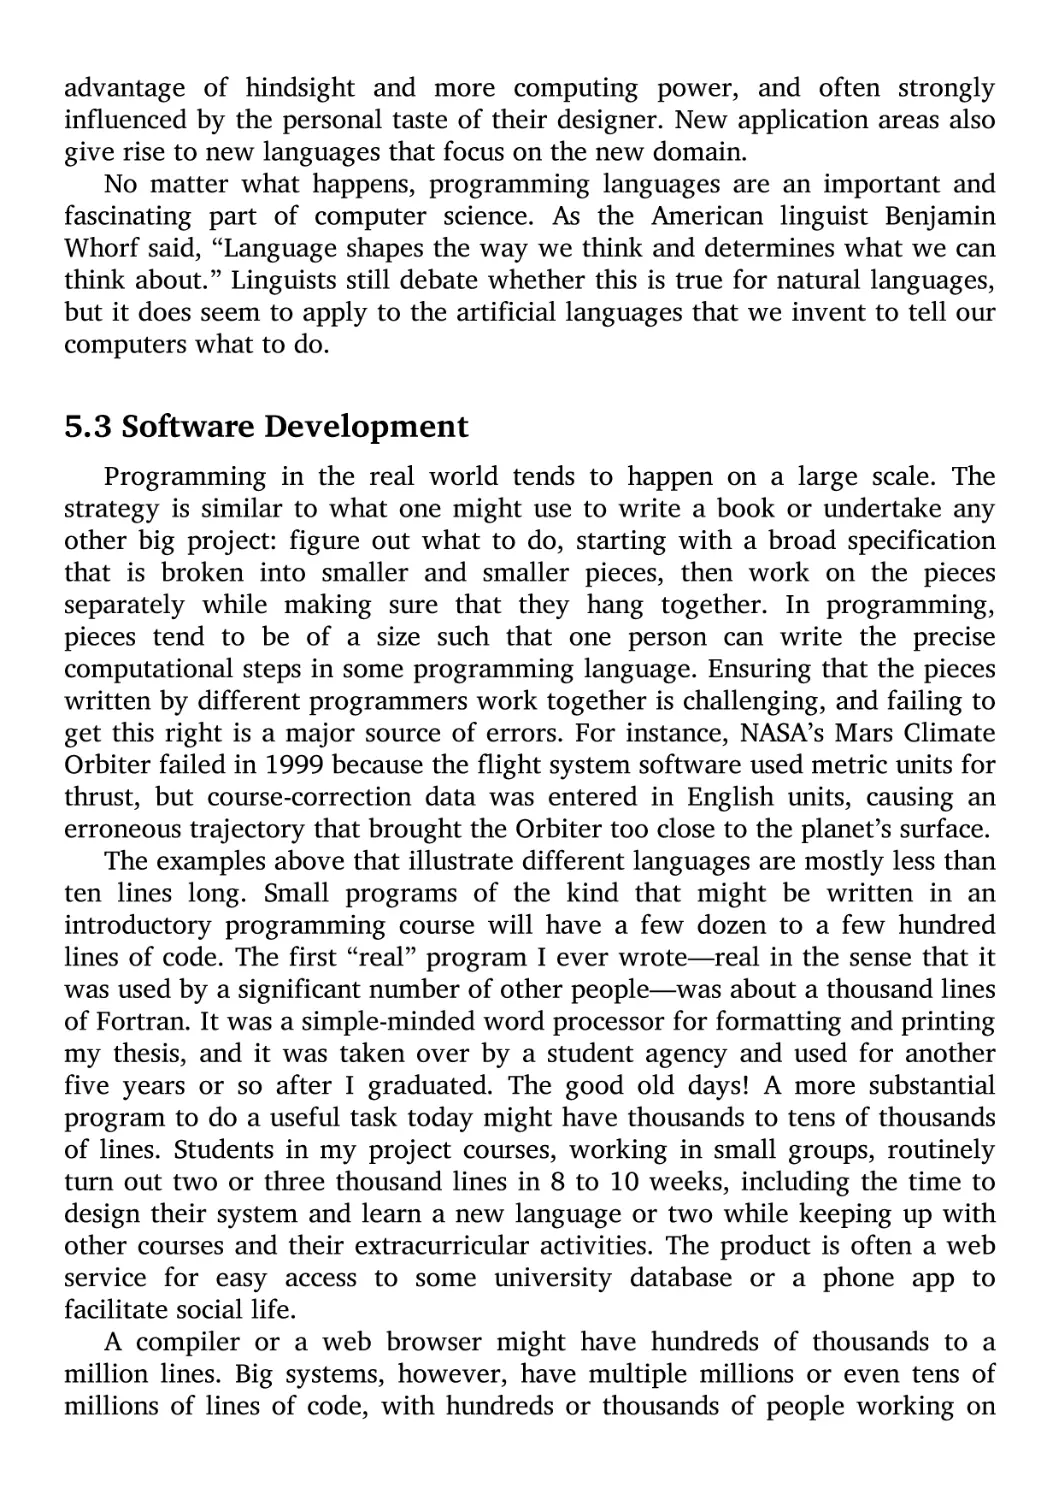 5.3 Software Development